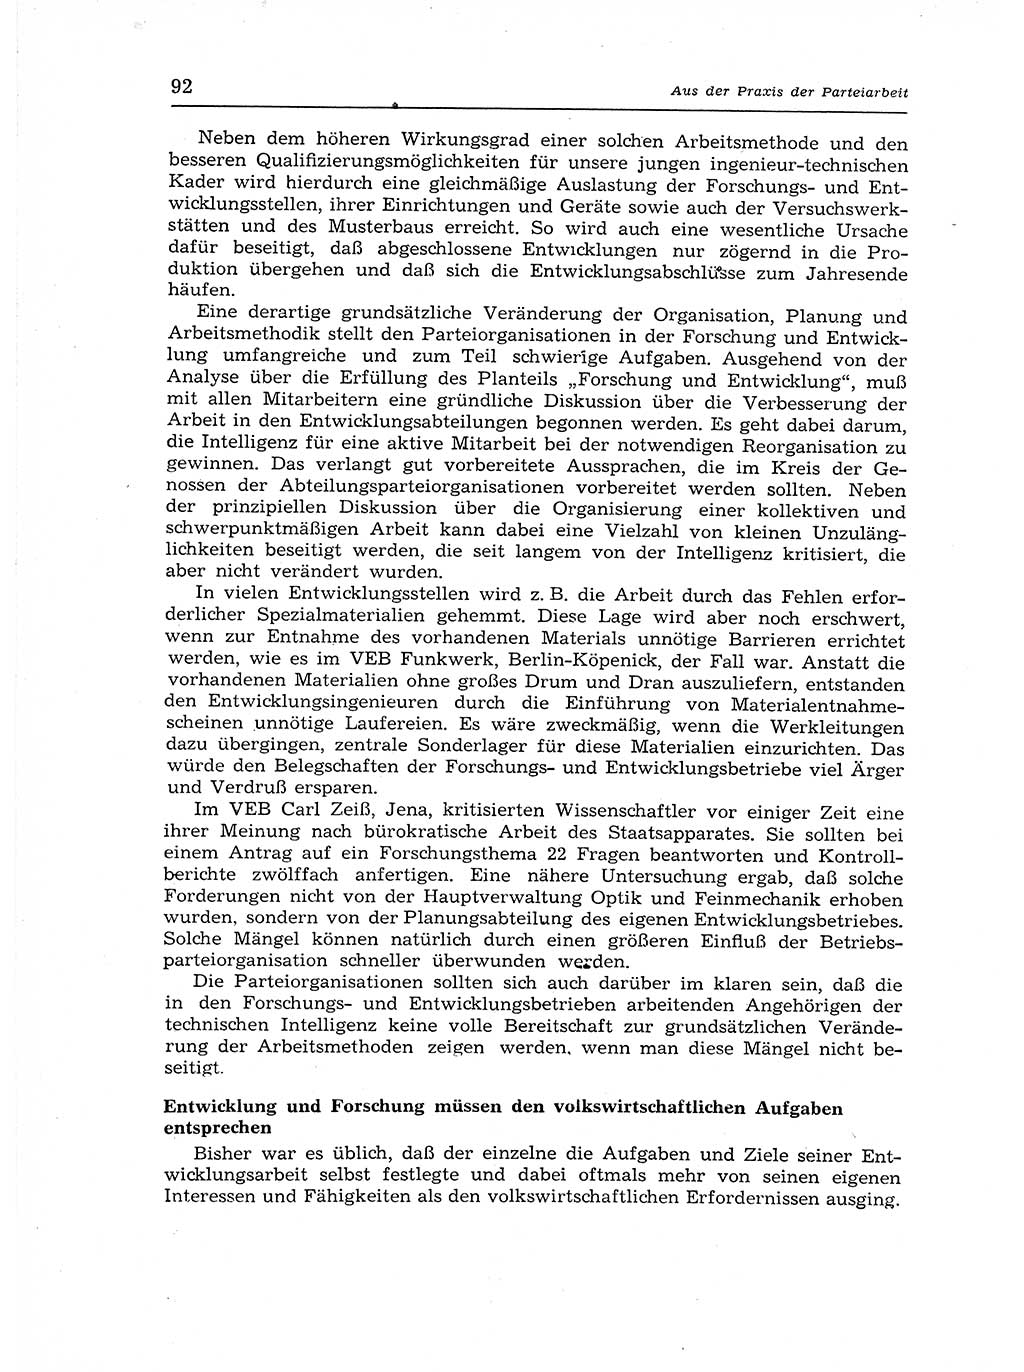 Neuer Weg (NW), Organ des Zentralkomitees (ZK) der SED (Sozialistische Einheitspartei Deutschlands) für Fragen des Parteiaufbaus und des Parteilebens, 12. Jahrgang [Deutsche Demokratische Republik (DDR)] 1957, Seite 92 (NW ZK SED DDR 1957, S. 92)